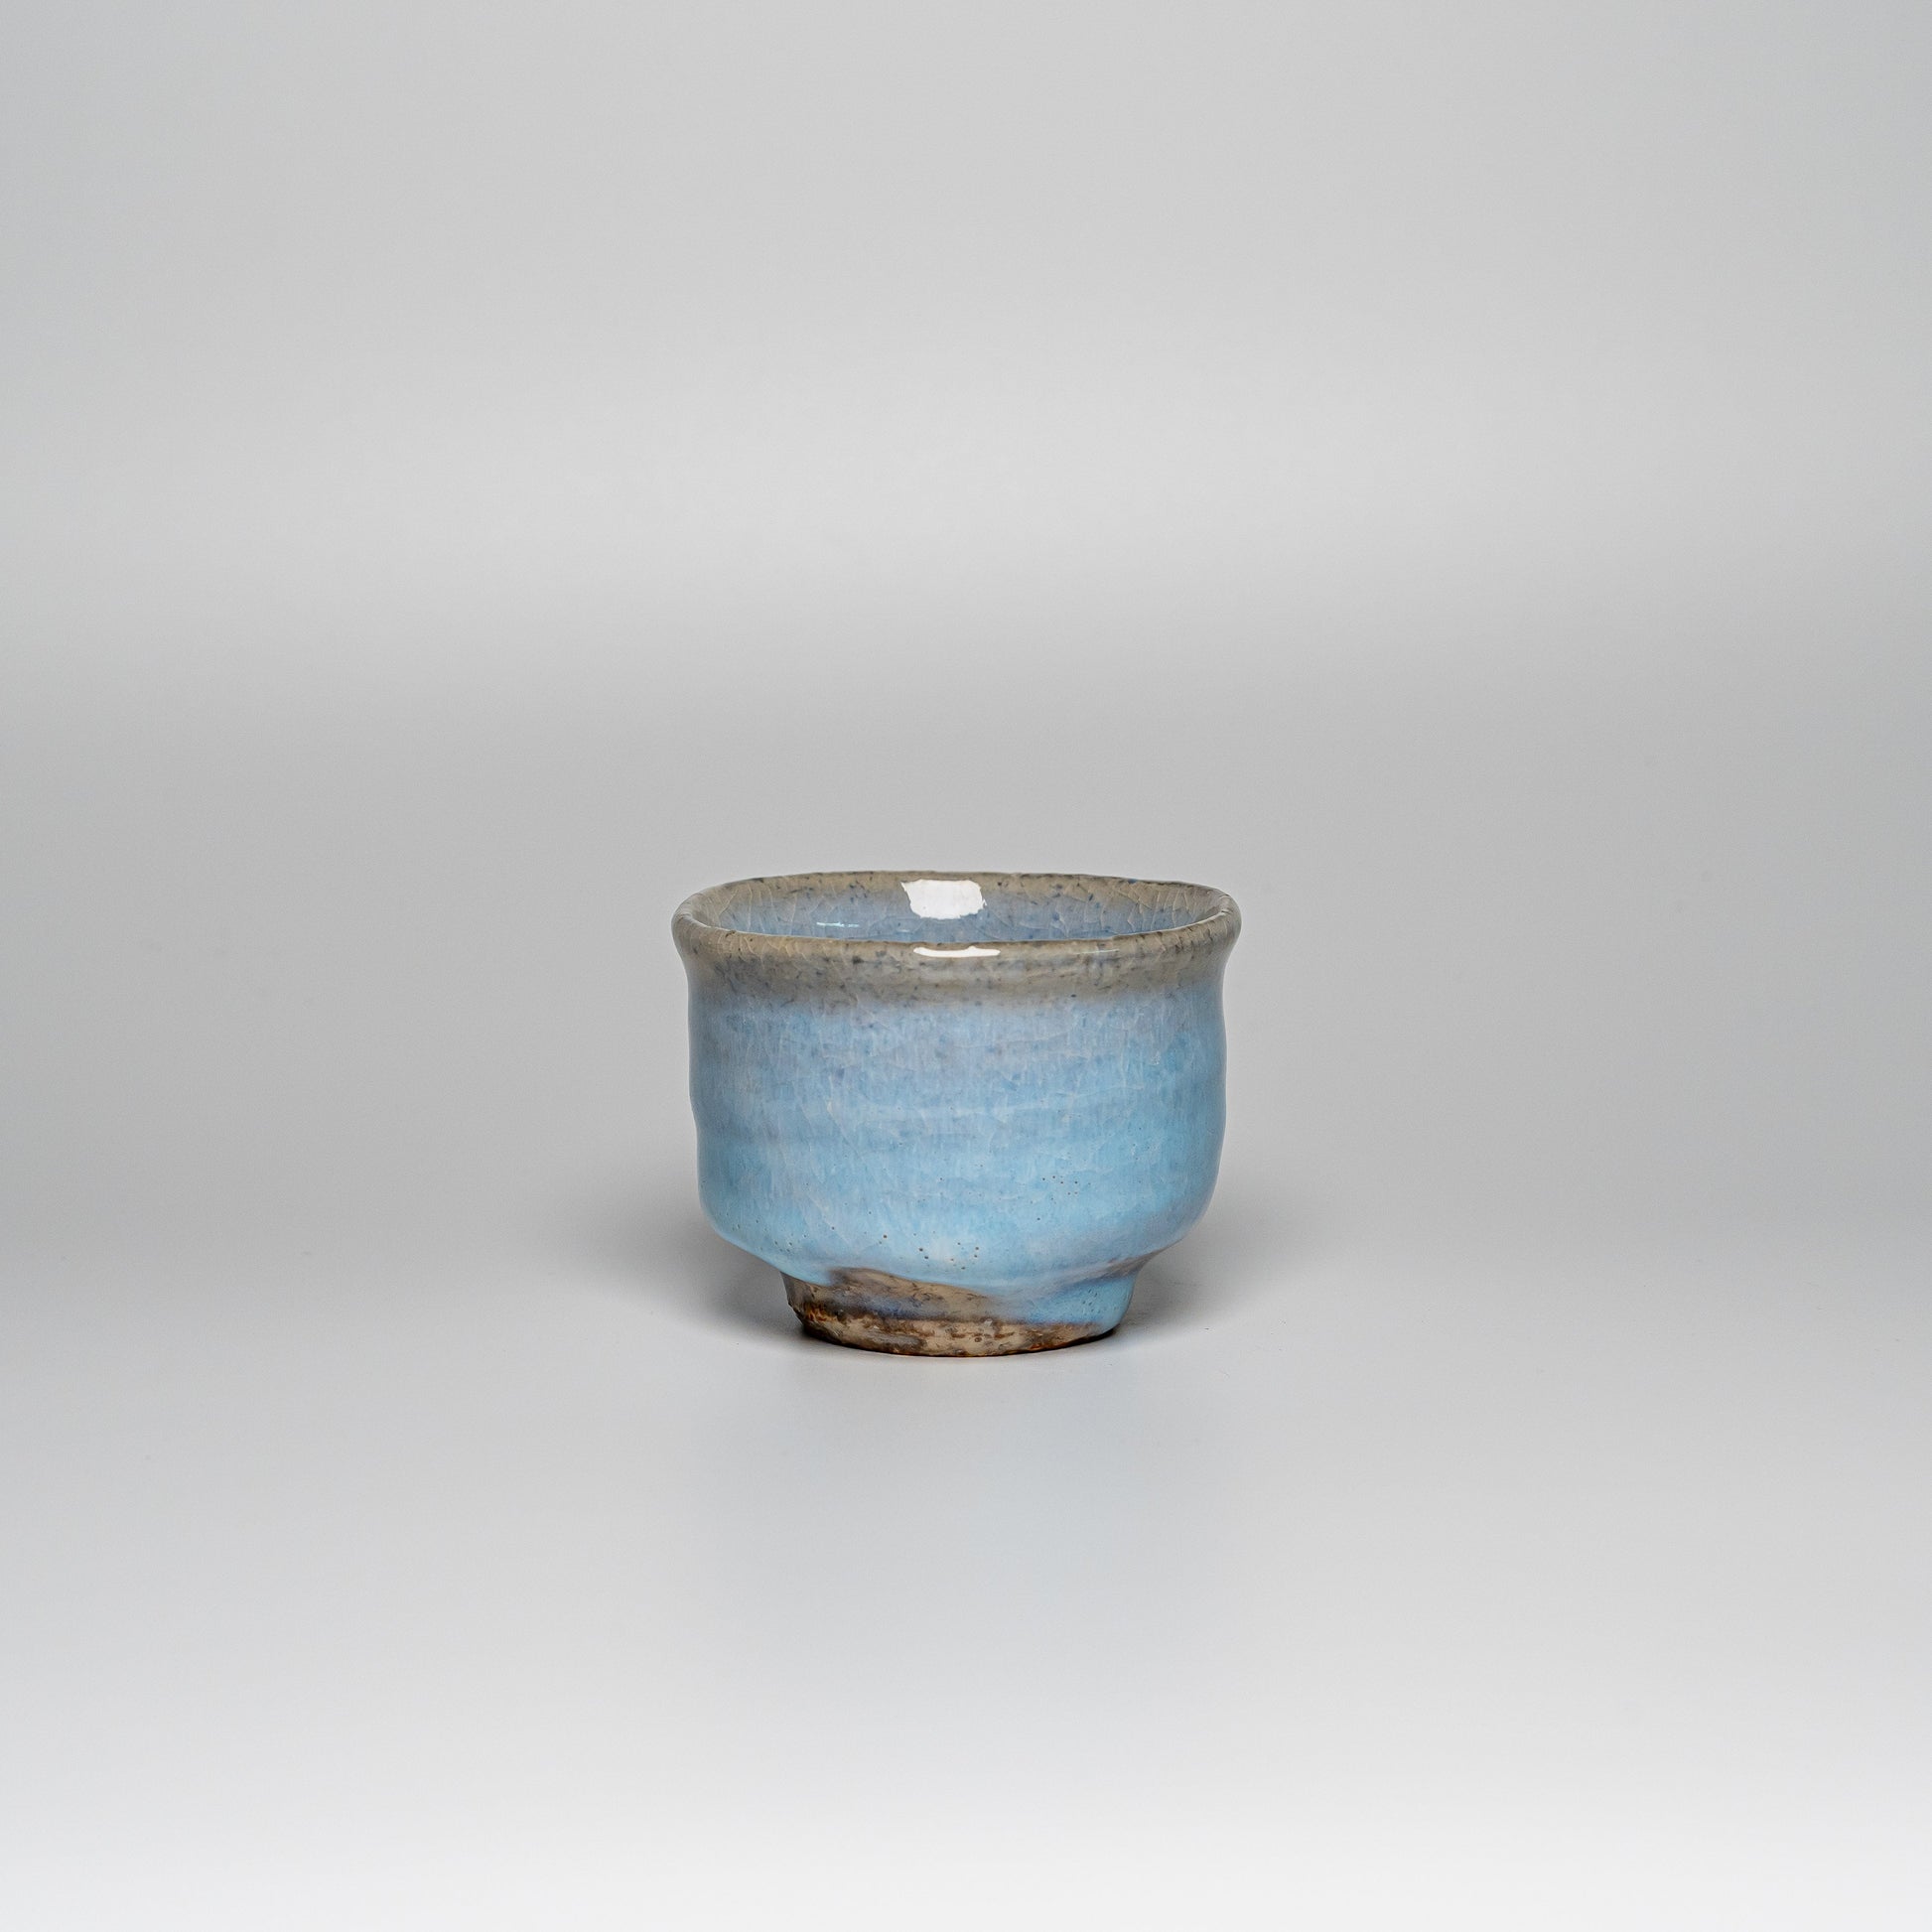 A blue Hagi yaki teacup on a white background